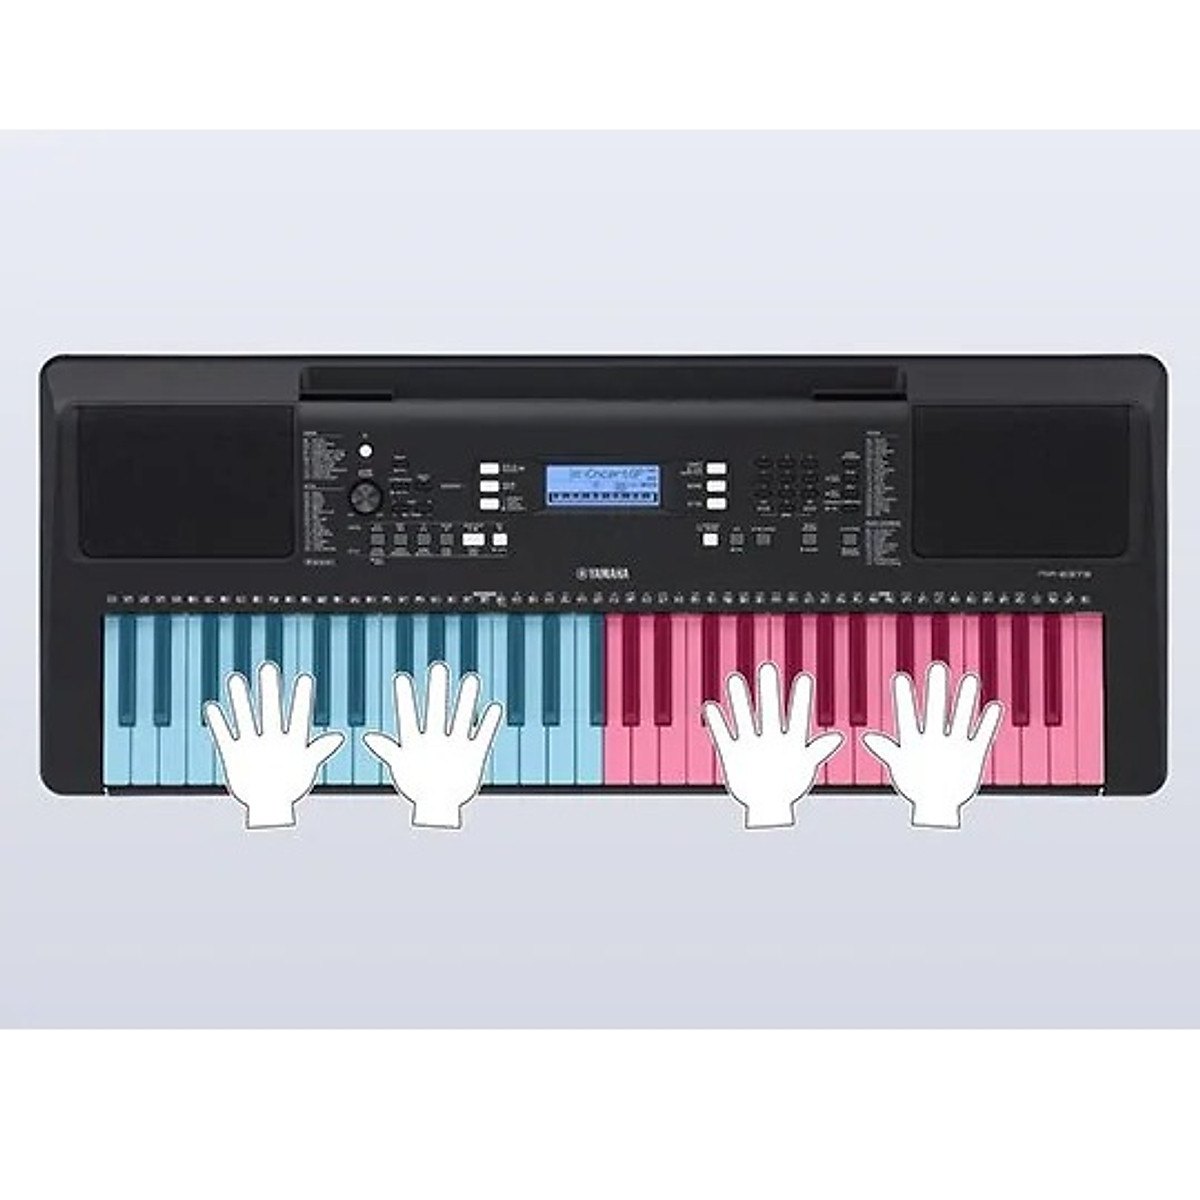 Đàn Organ điện tử/ Portable Keyboard - Yamaha PSR-EW310 (PSR EW310) - Màu đen - Hàng chính hãng:5244